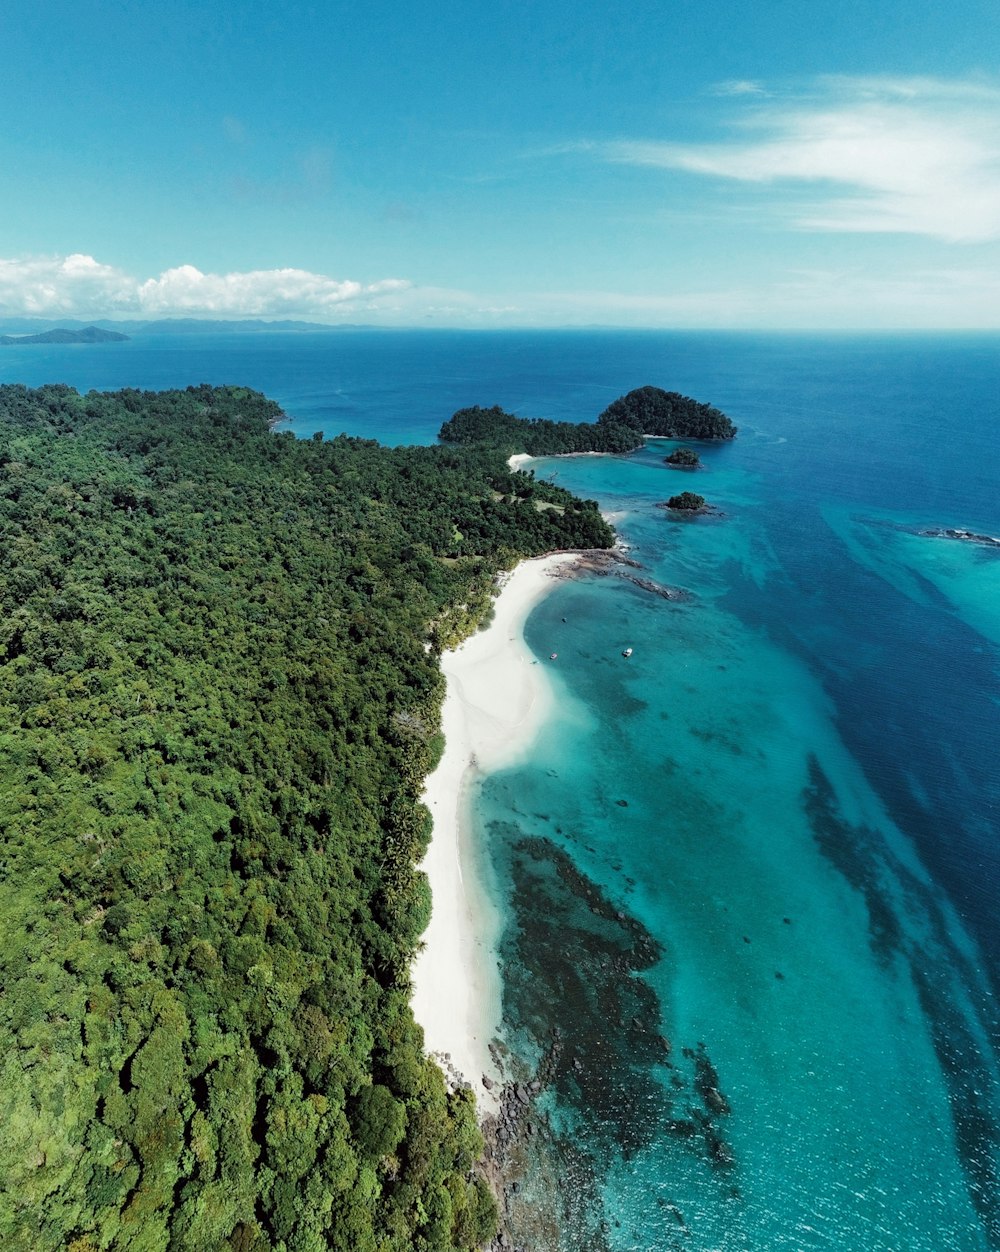 Une vue aérienne d’une île tropicale avec une plage de sable blanc